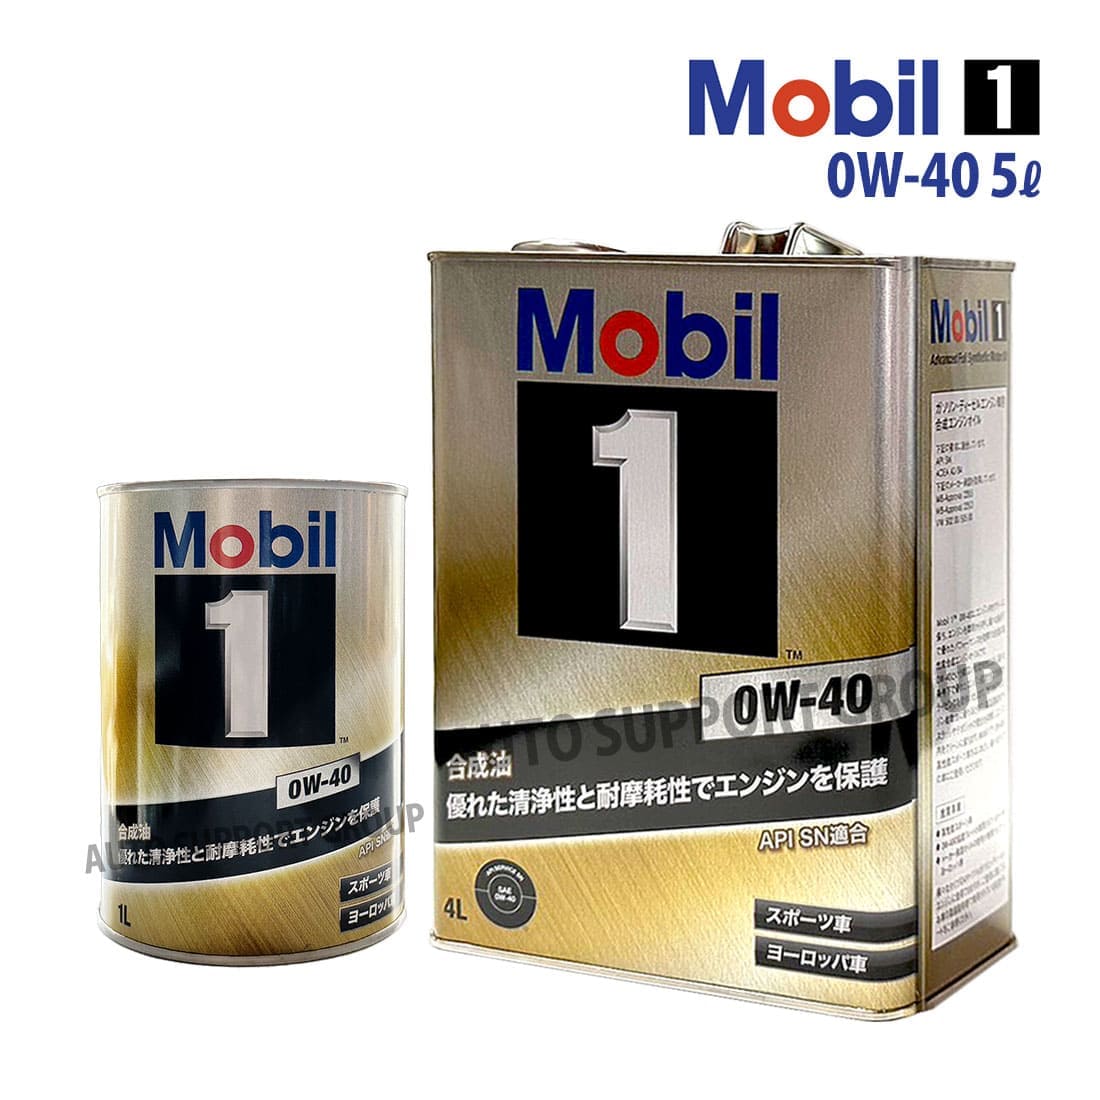 エンジンオイル 0W-40 SP モービル1 Mobil1 1L缶 (1リットル) : ys 